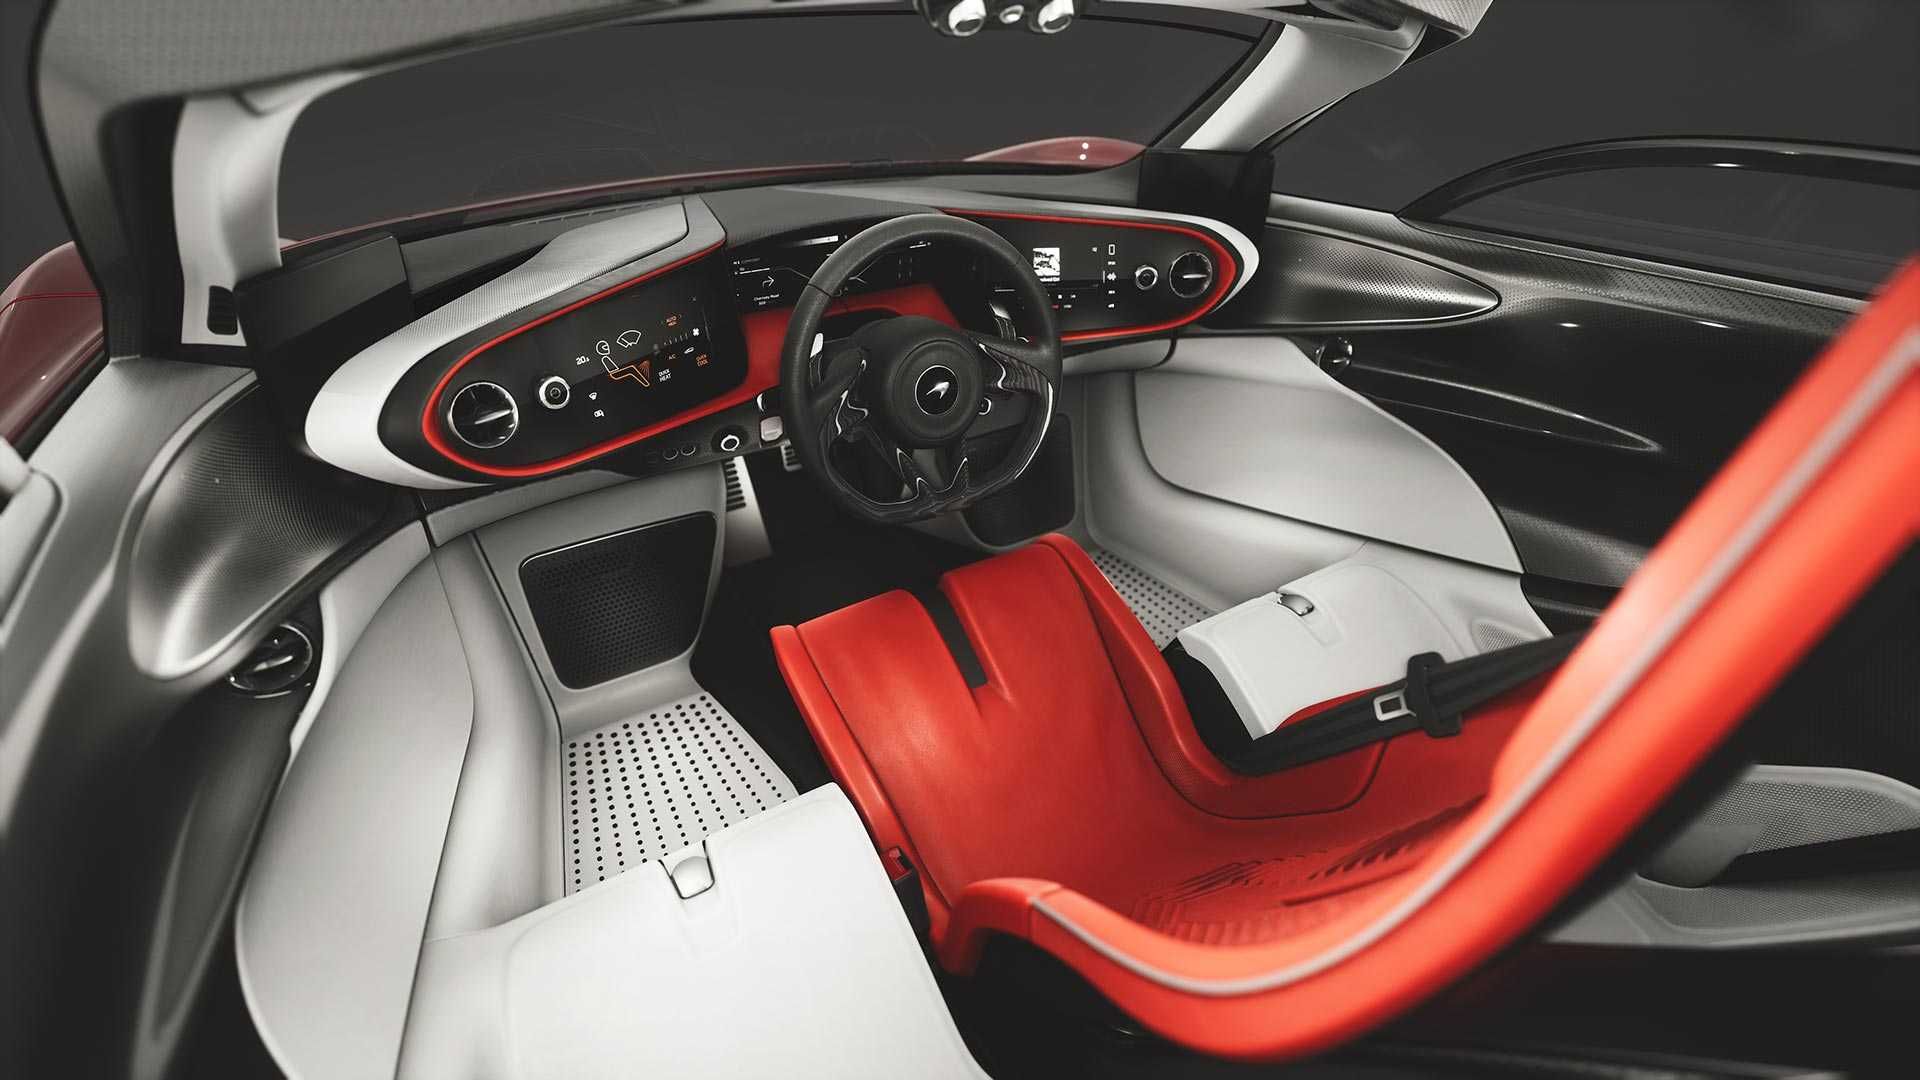 McLaren Speedtail: 3 передних сиденья и без боковых зеркал